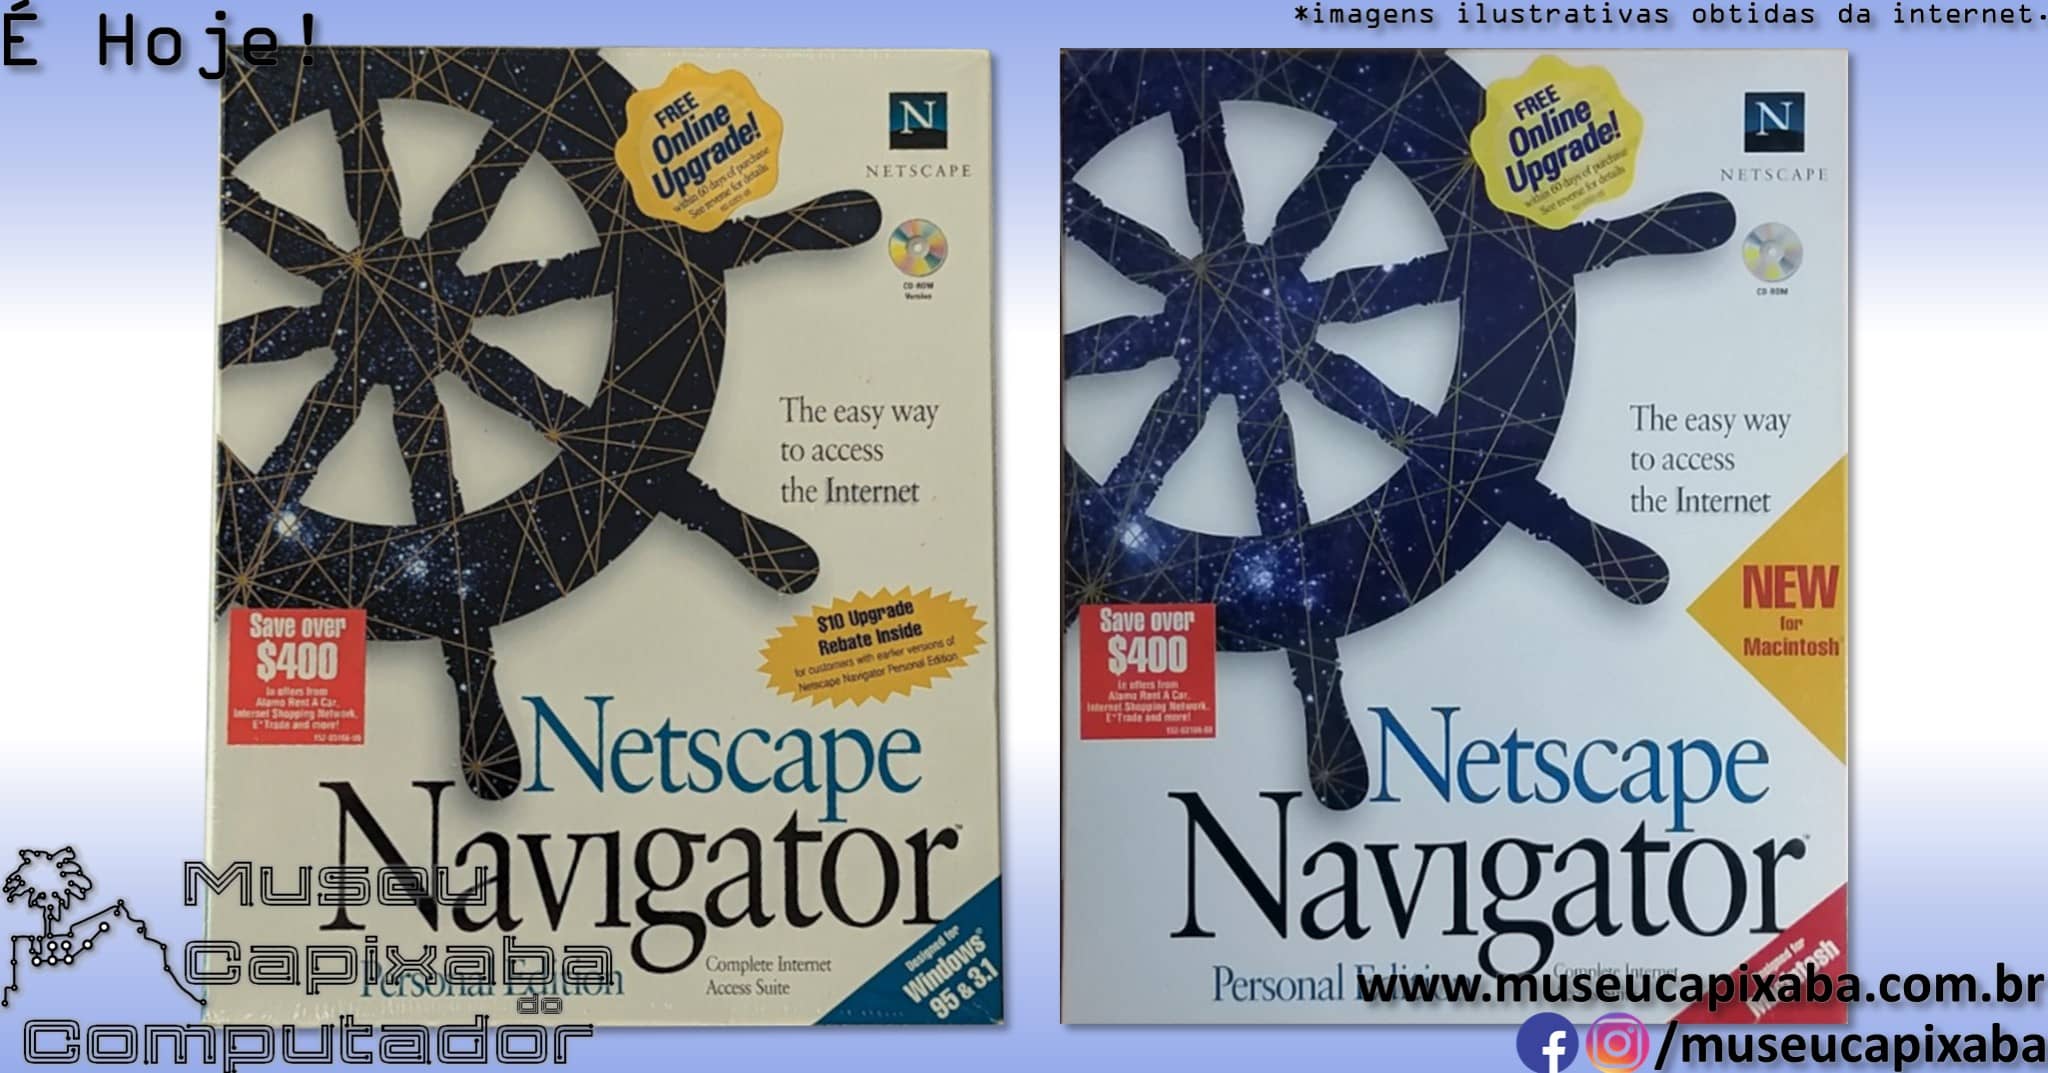 Netscape Communications Corporation 6